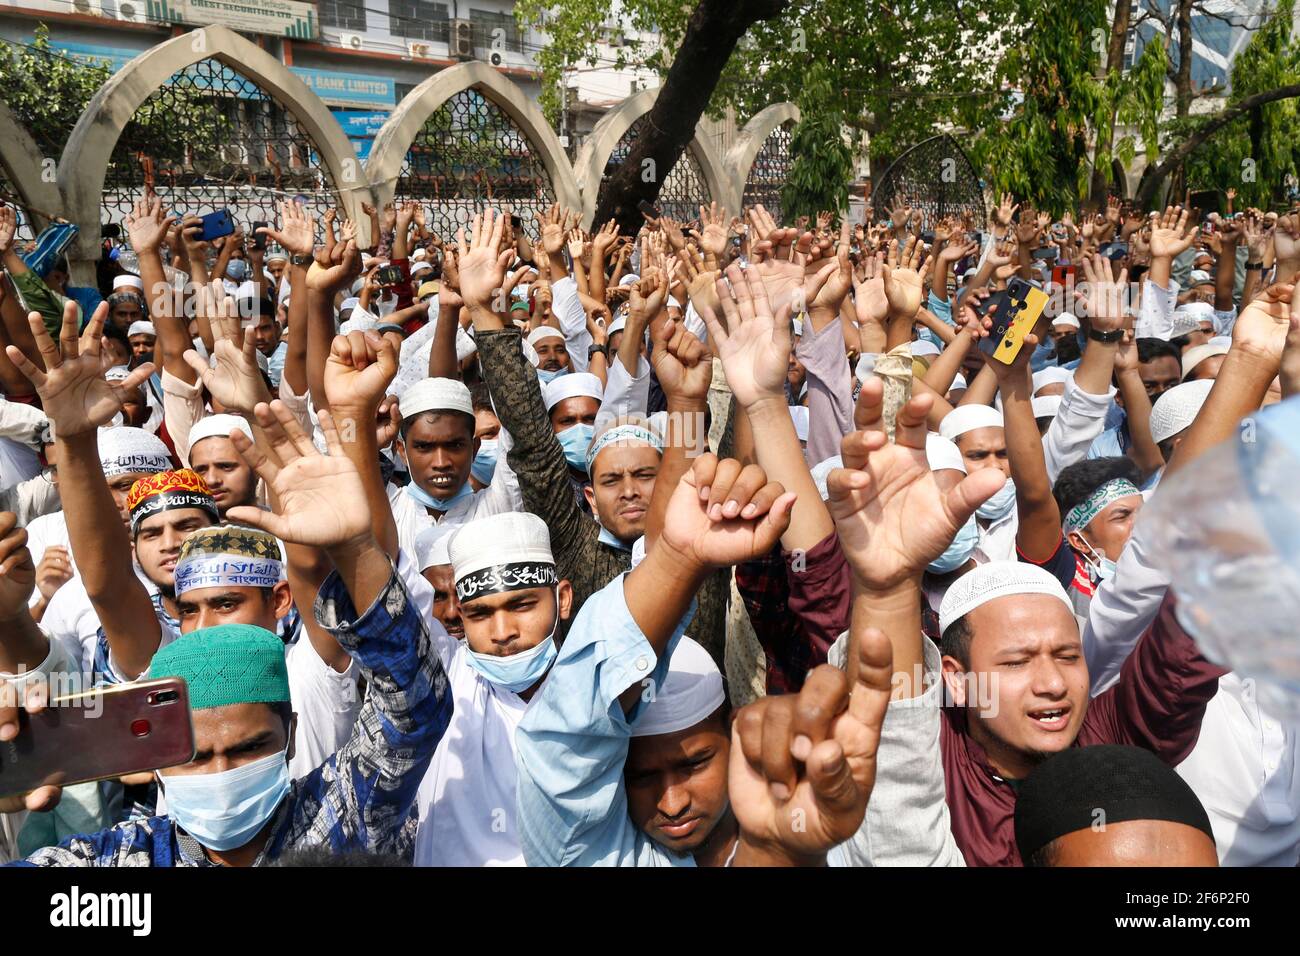 2 avril 2021, Dhaka, Bangladesh : les partisans de Hefajat-e-Islam Bangladesh ont crié leur slogan lorsqu'ils se réunissent dans une manifestation devant la mosquée nationale Baitul Mukarram pour protester contre la mort de ses activistes lors d'affrontements avec des responsables de la loi pendant trois jours, à Dhaka, au Bangladesh, le 2 avril 2021. (Image crédit: © Suvra Kanti Das/ZUMA Wire) Banque D'Images